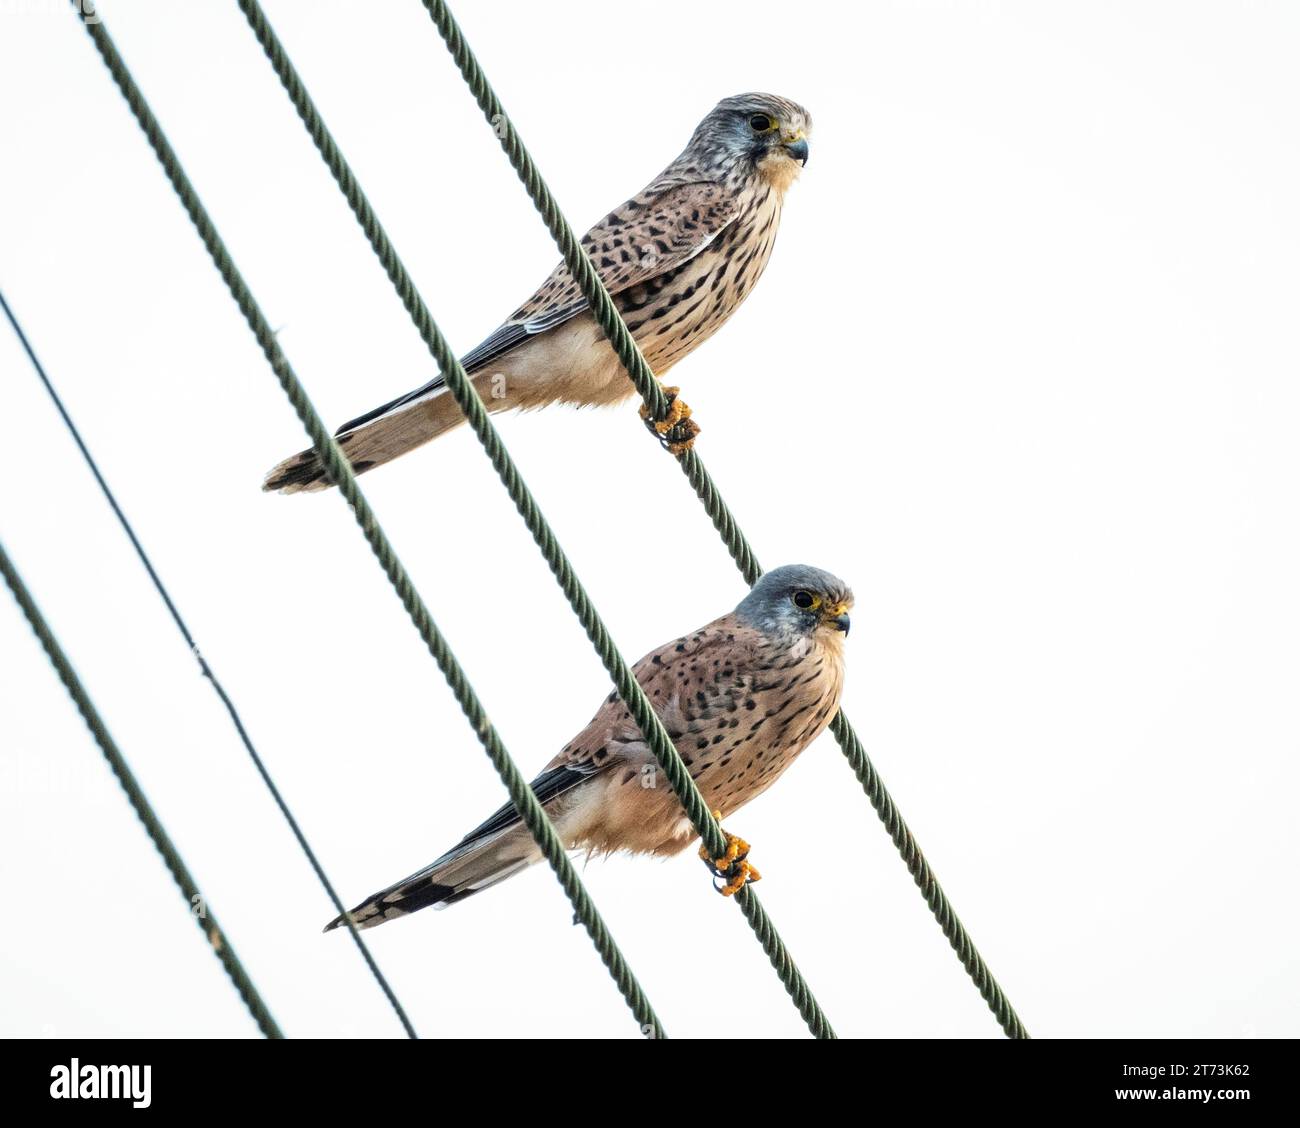 Coppia di caschi (falco tinnunculus) femmina (sinistra) e maschio arroccati insieme su linee elettriche, Mandria, Paphos, Cipro Foto Stock